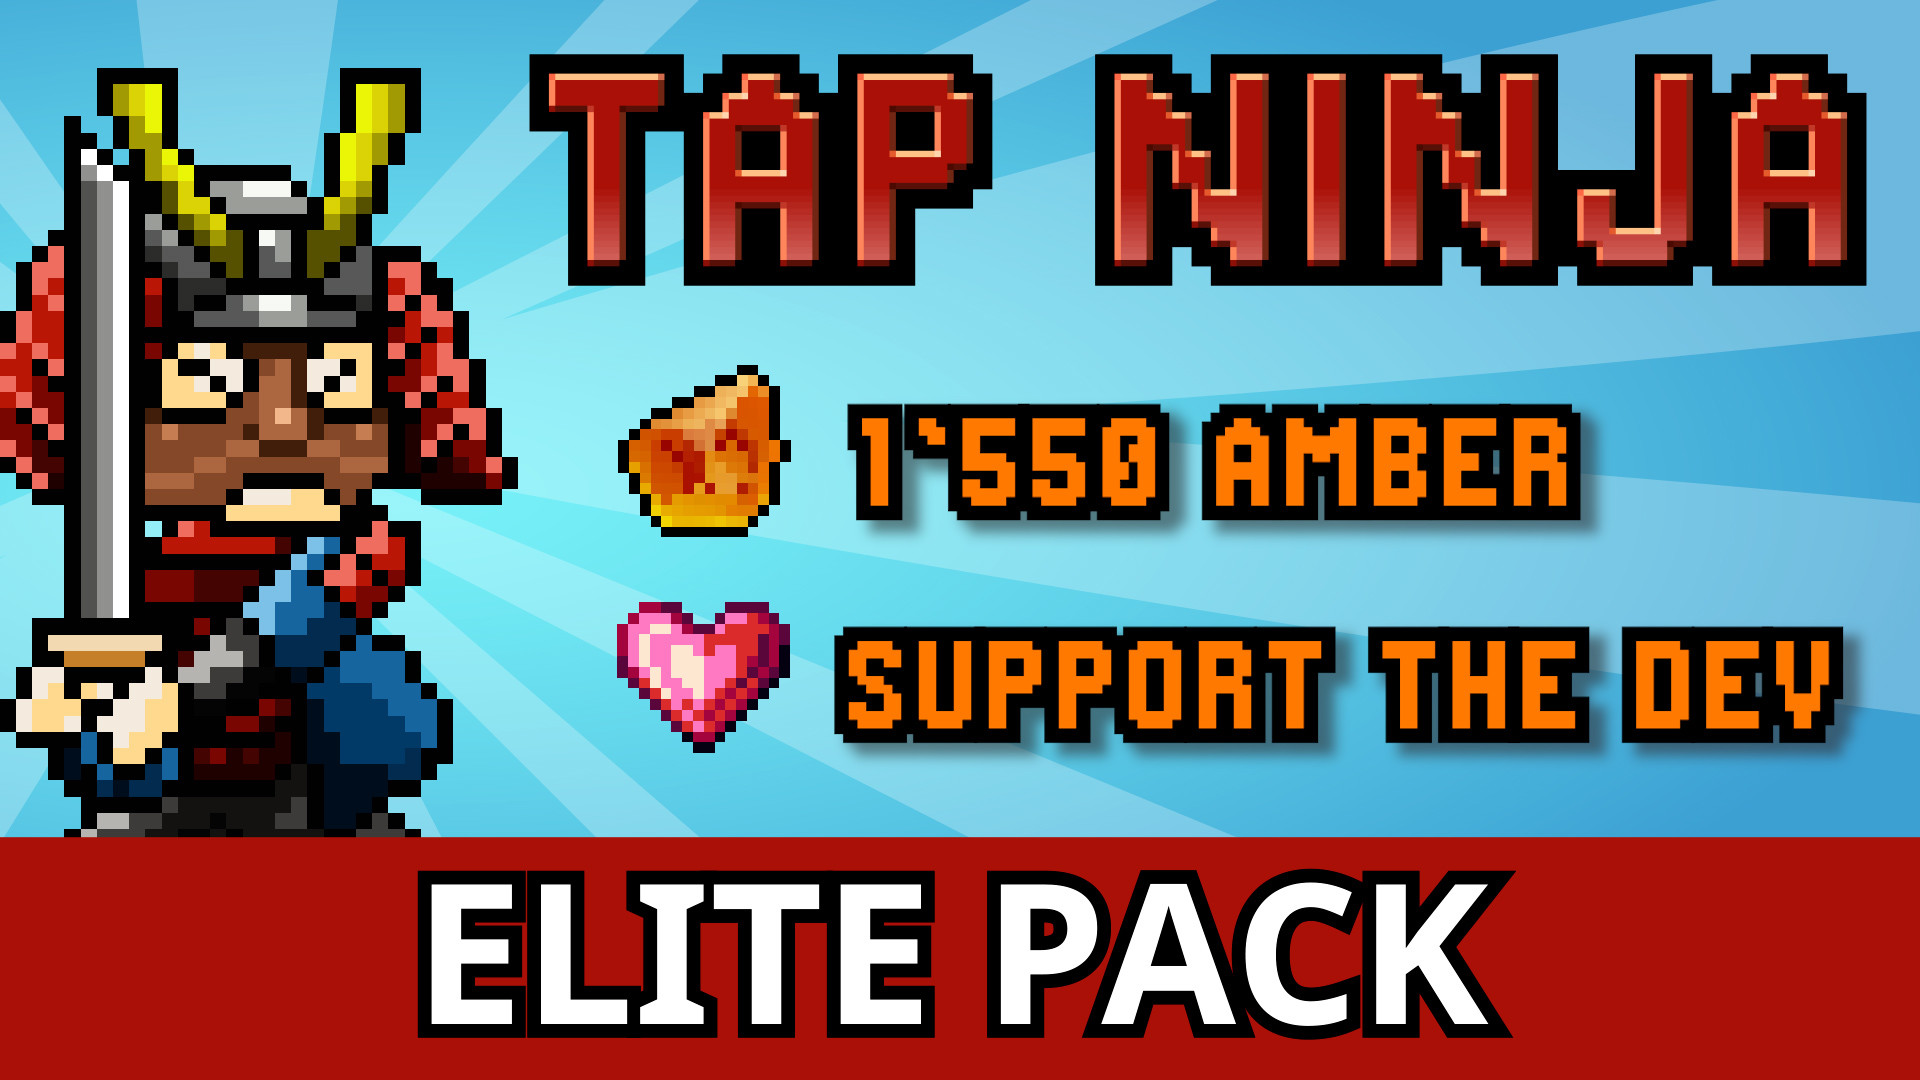 Tap Ninja - Supporter Pack DLC Steam CD Key, $4.51